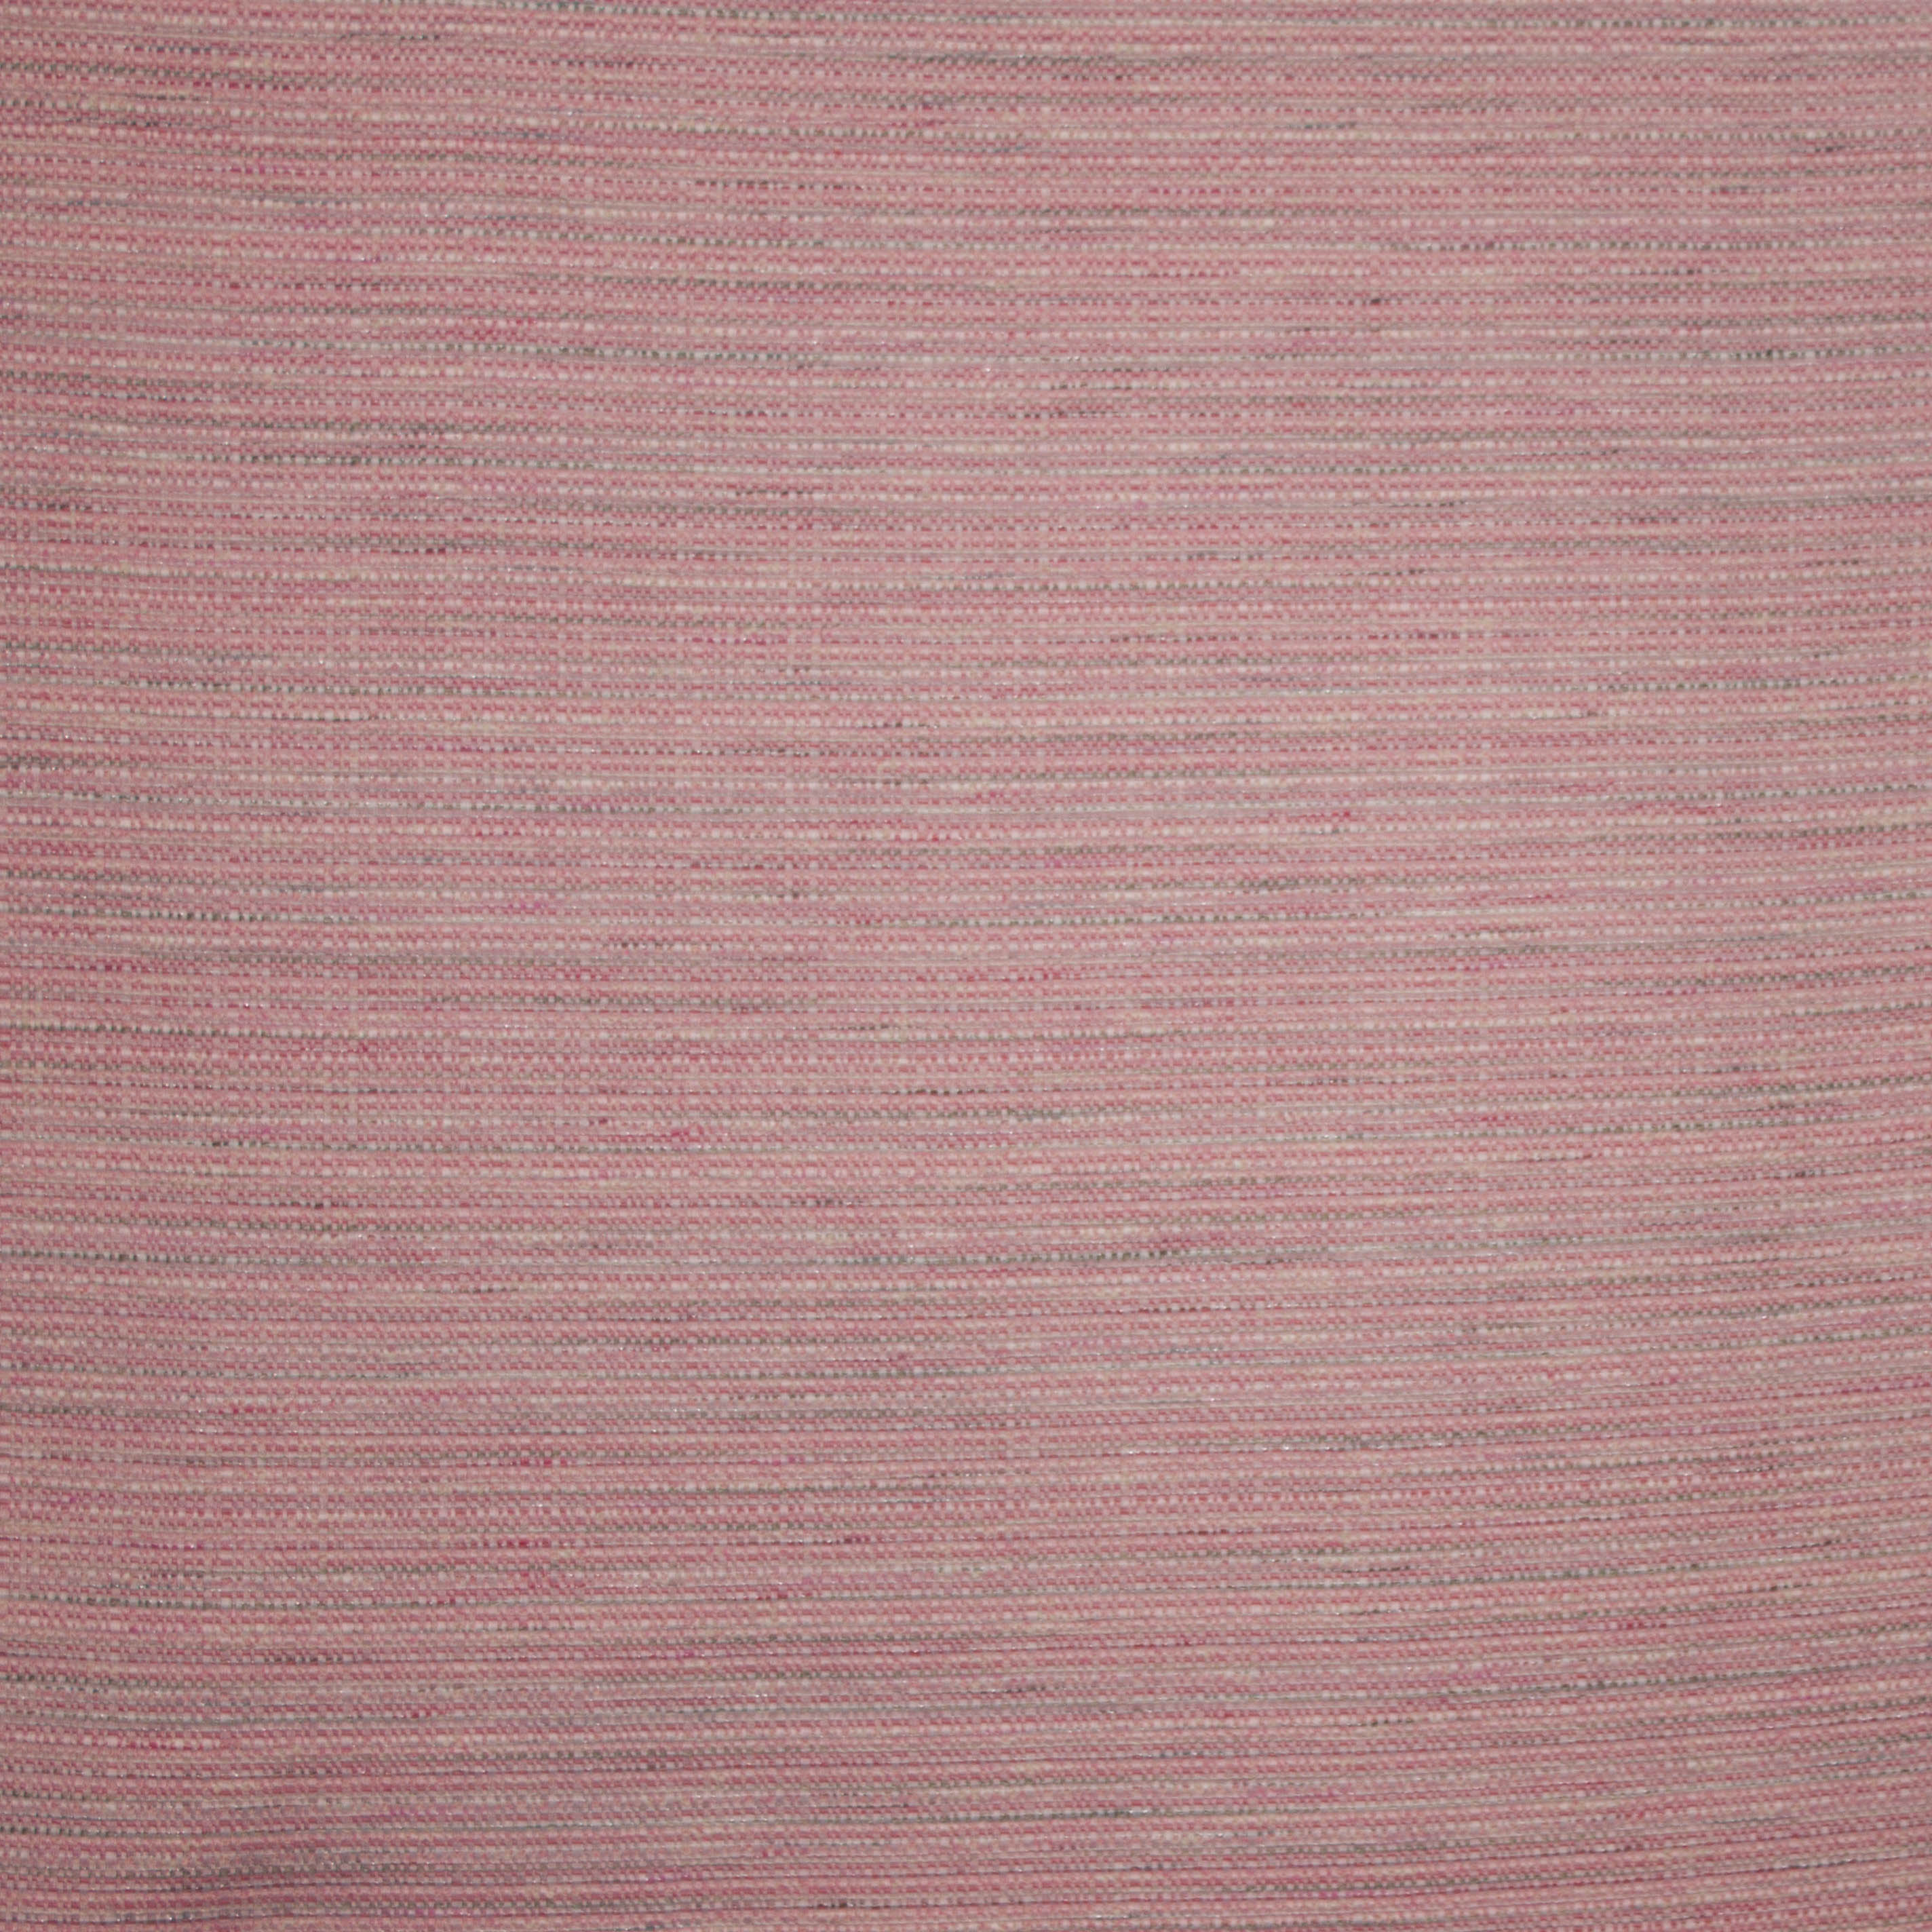 Chanelstof in roze tinten